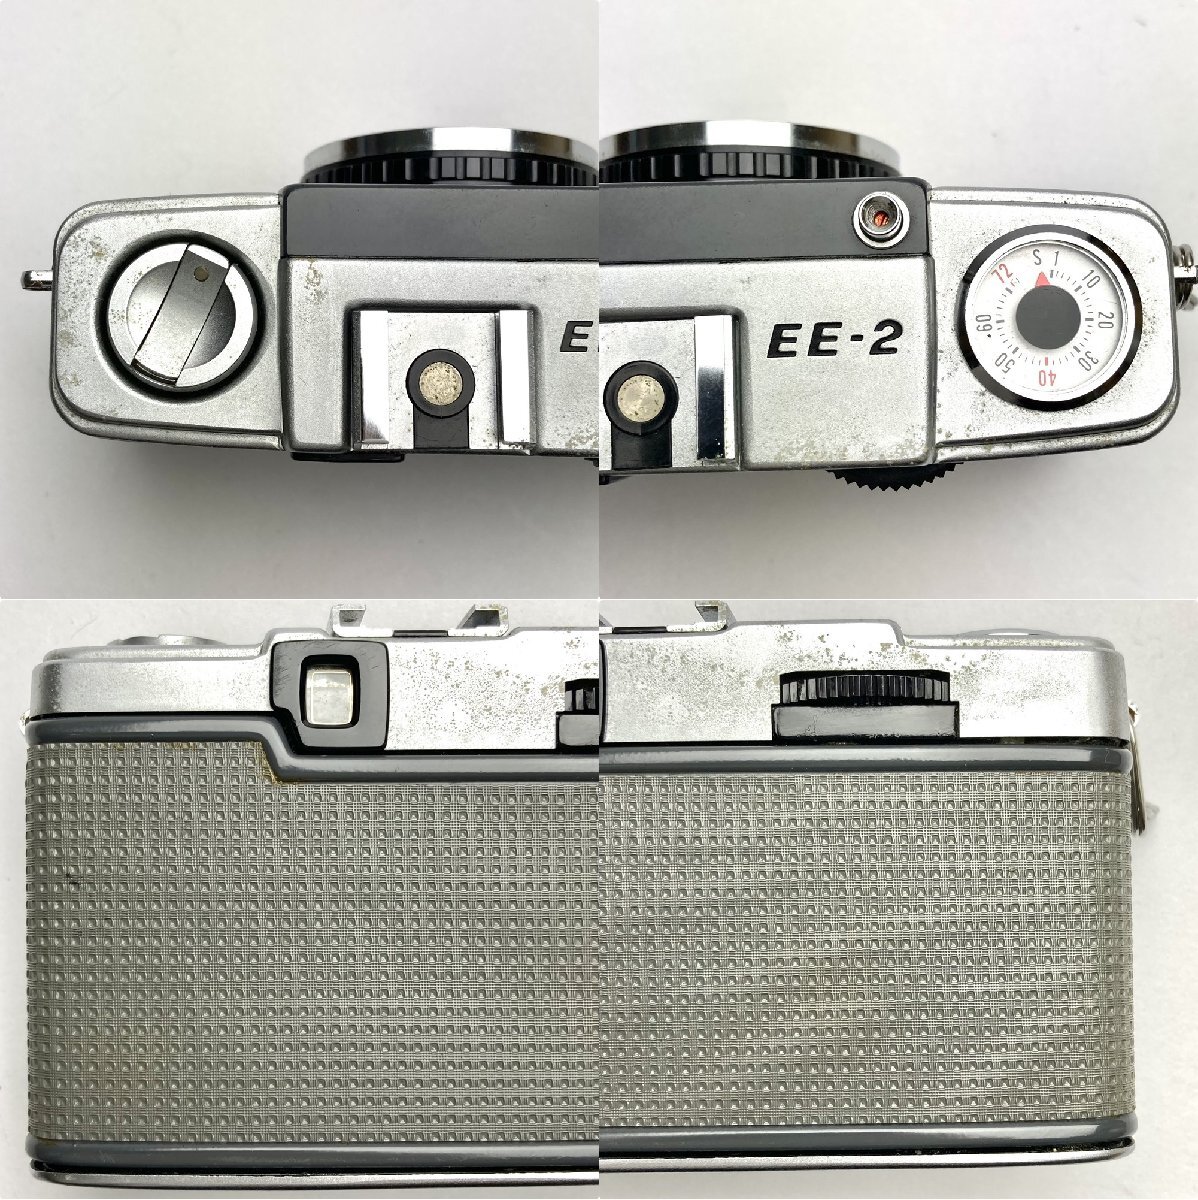 rm) 【ジャンク扱い】 OLYMPUS-PEN オリンパス ペン フィルム カメラ EE-2 1:3.5 f=28mm Lens MADE IN JAPAN 中古 USED 現状渡しの画像3